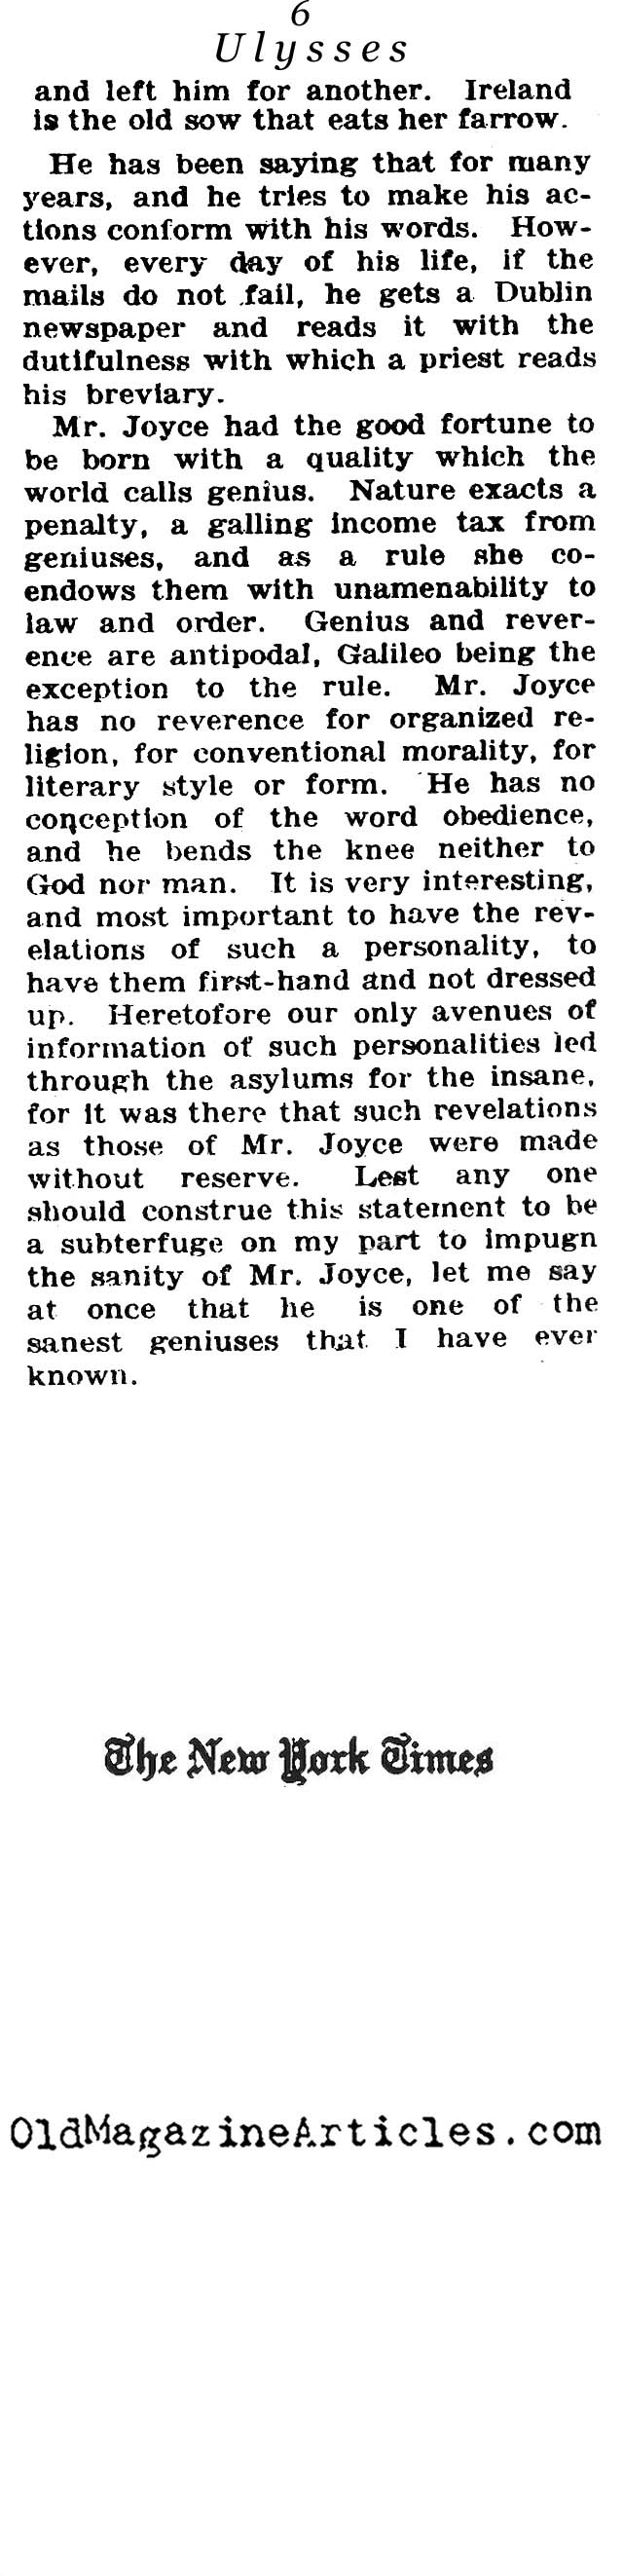 <em>Ulysses</em> by James Joyce (NY Times, 1922)